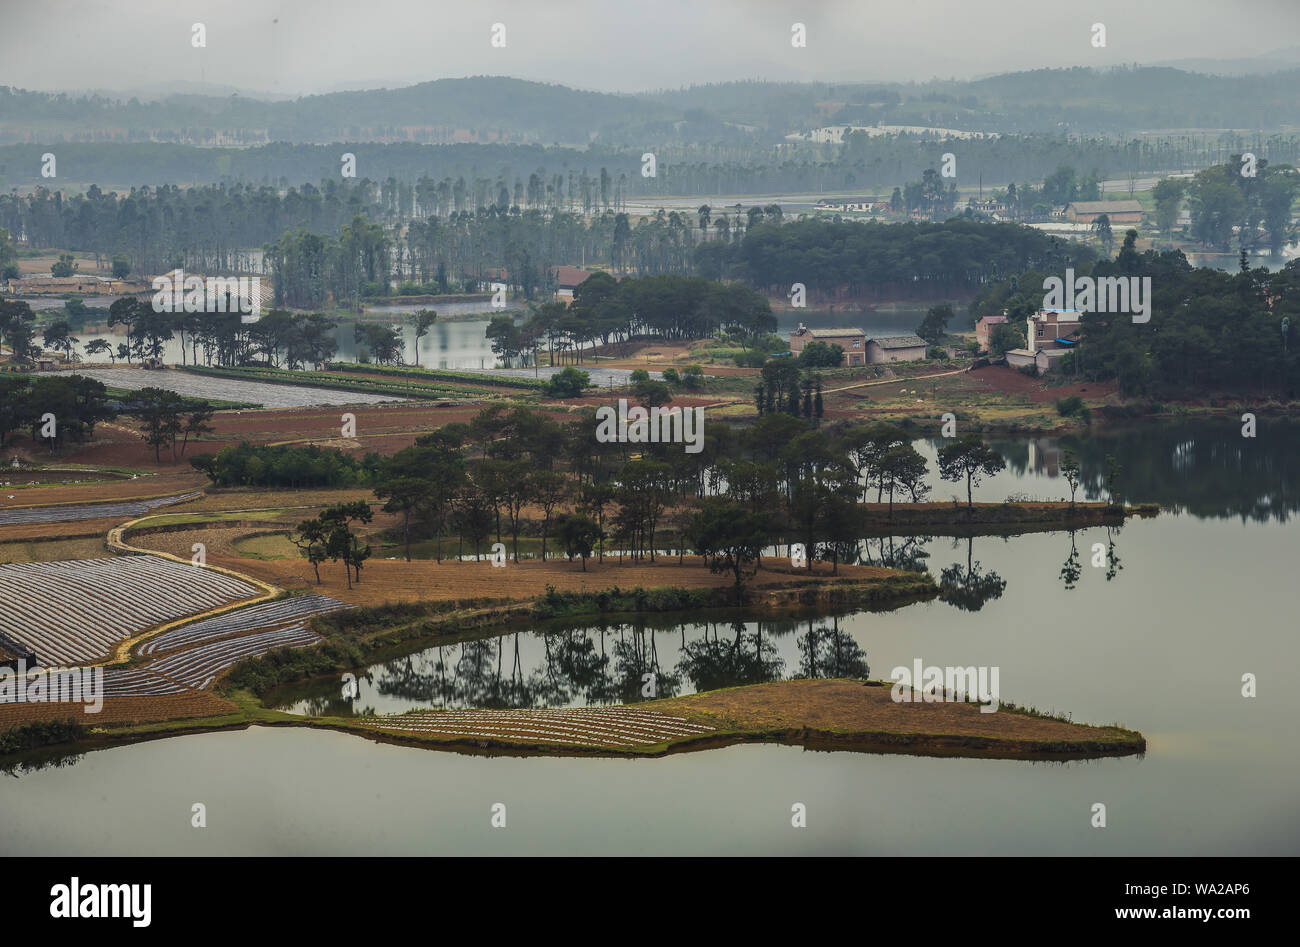 , Della provincia dello Yunnan, wenshan zhuang e miao minoranza prefettura autonoma north hill county, chi è il nero scenic area, angolo, vista panoramica, risaie Foto Stock